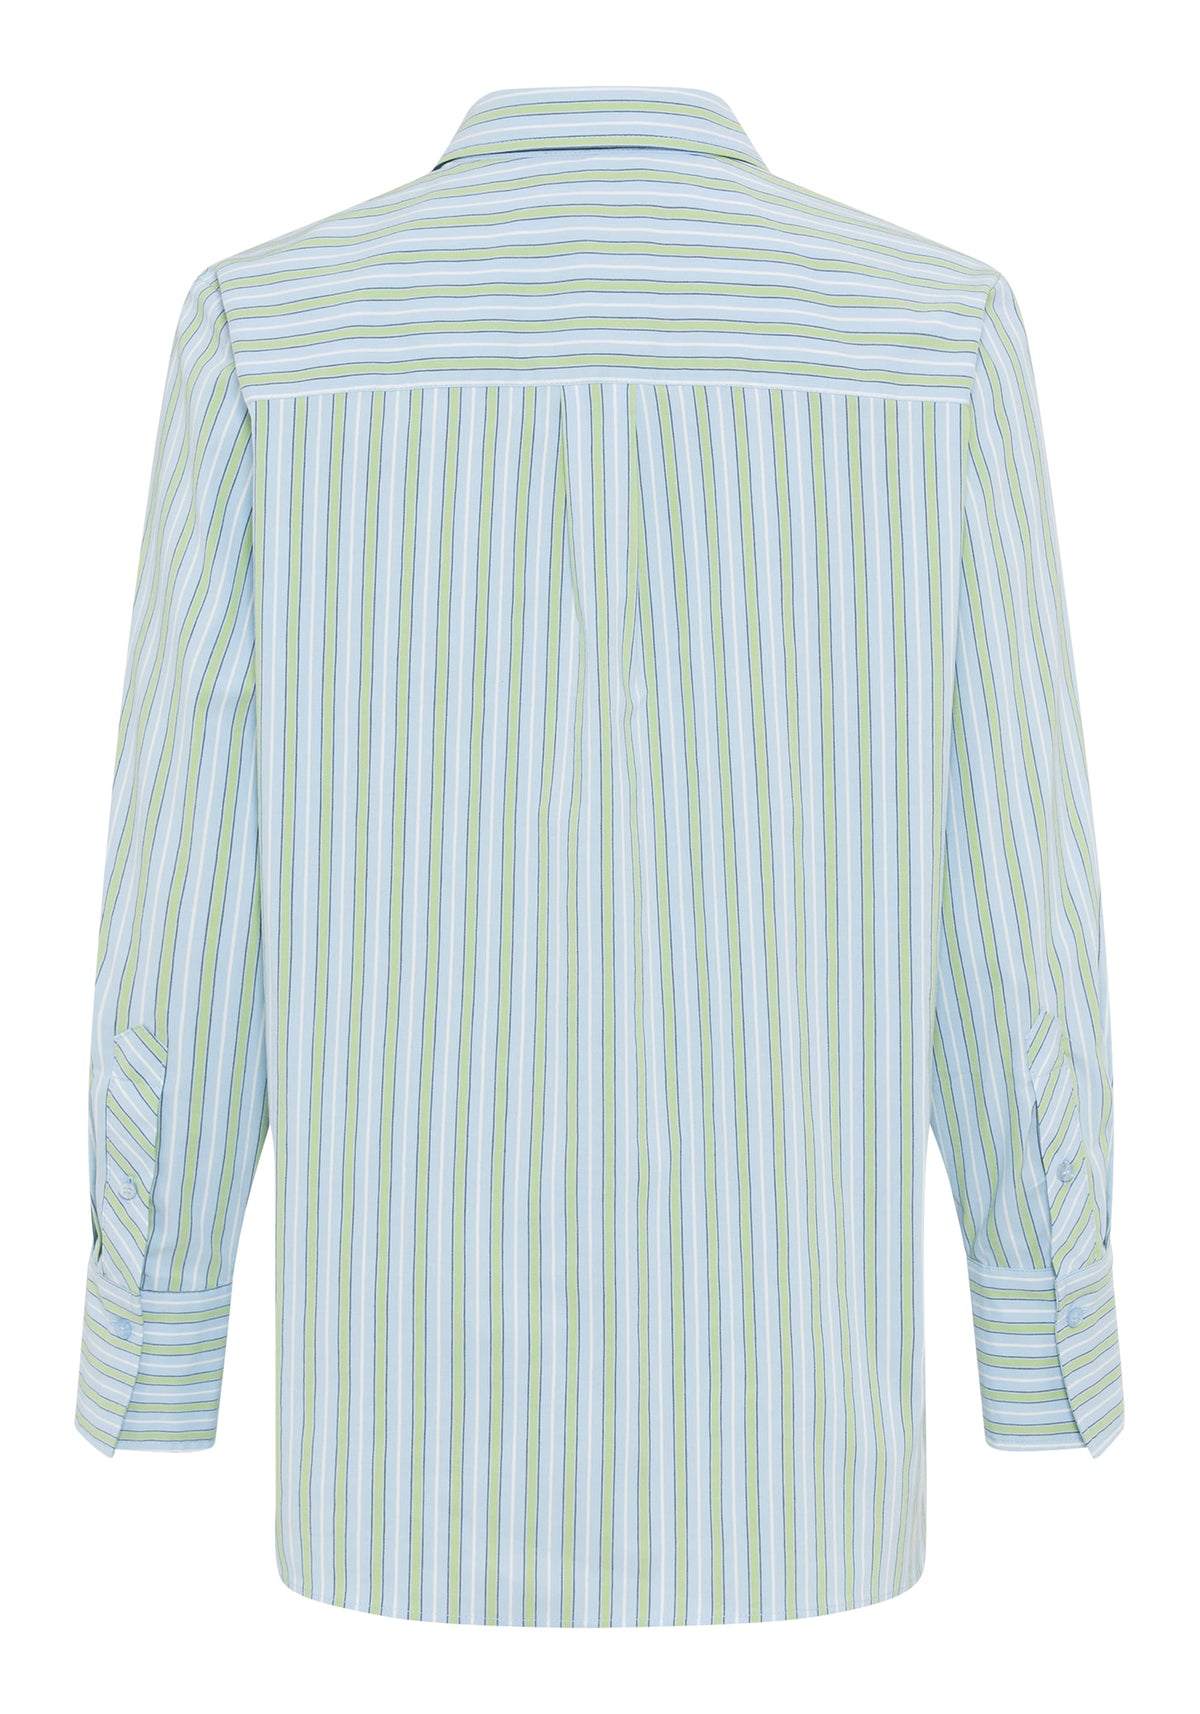 Cotton Blend Long Sleeve Striped Shirt